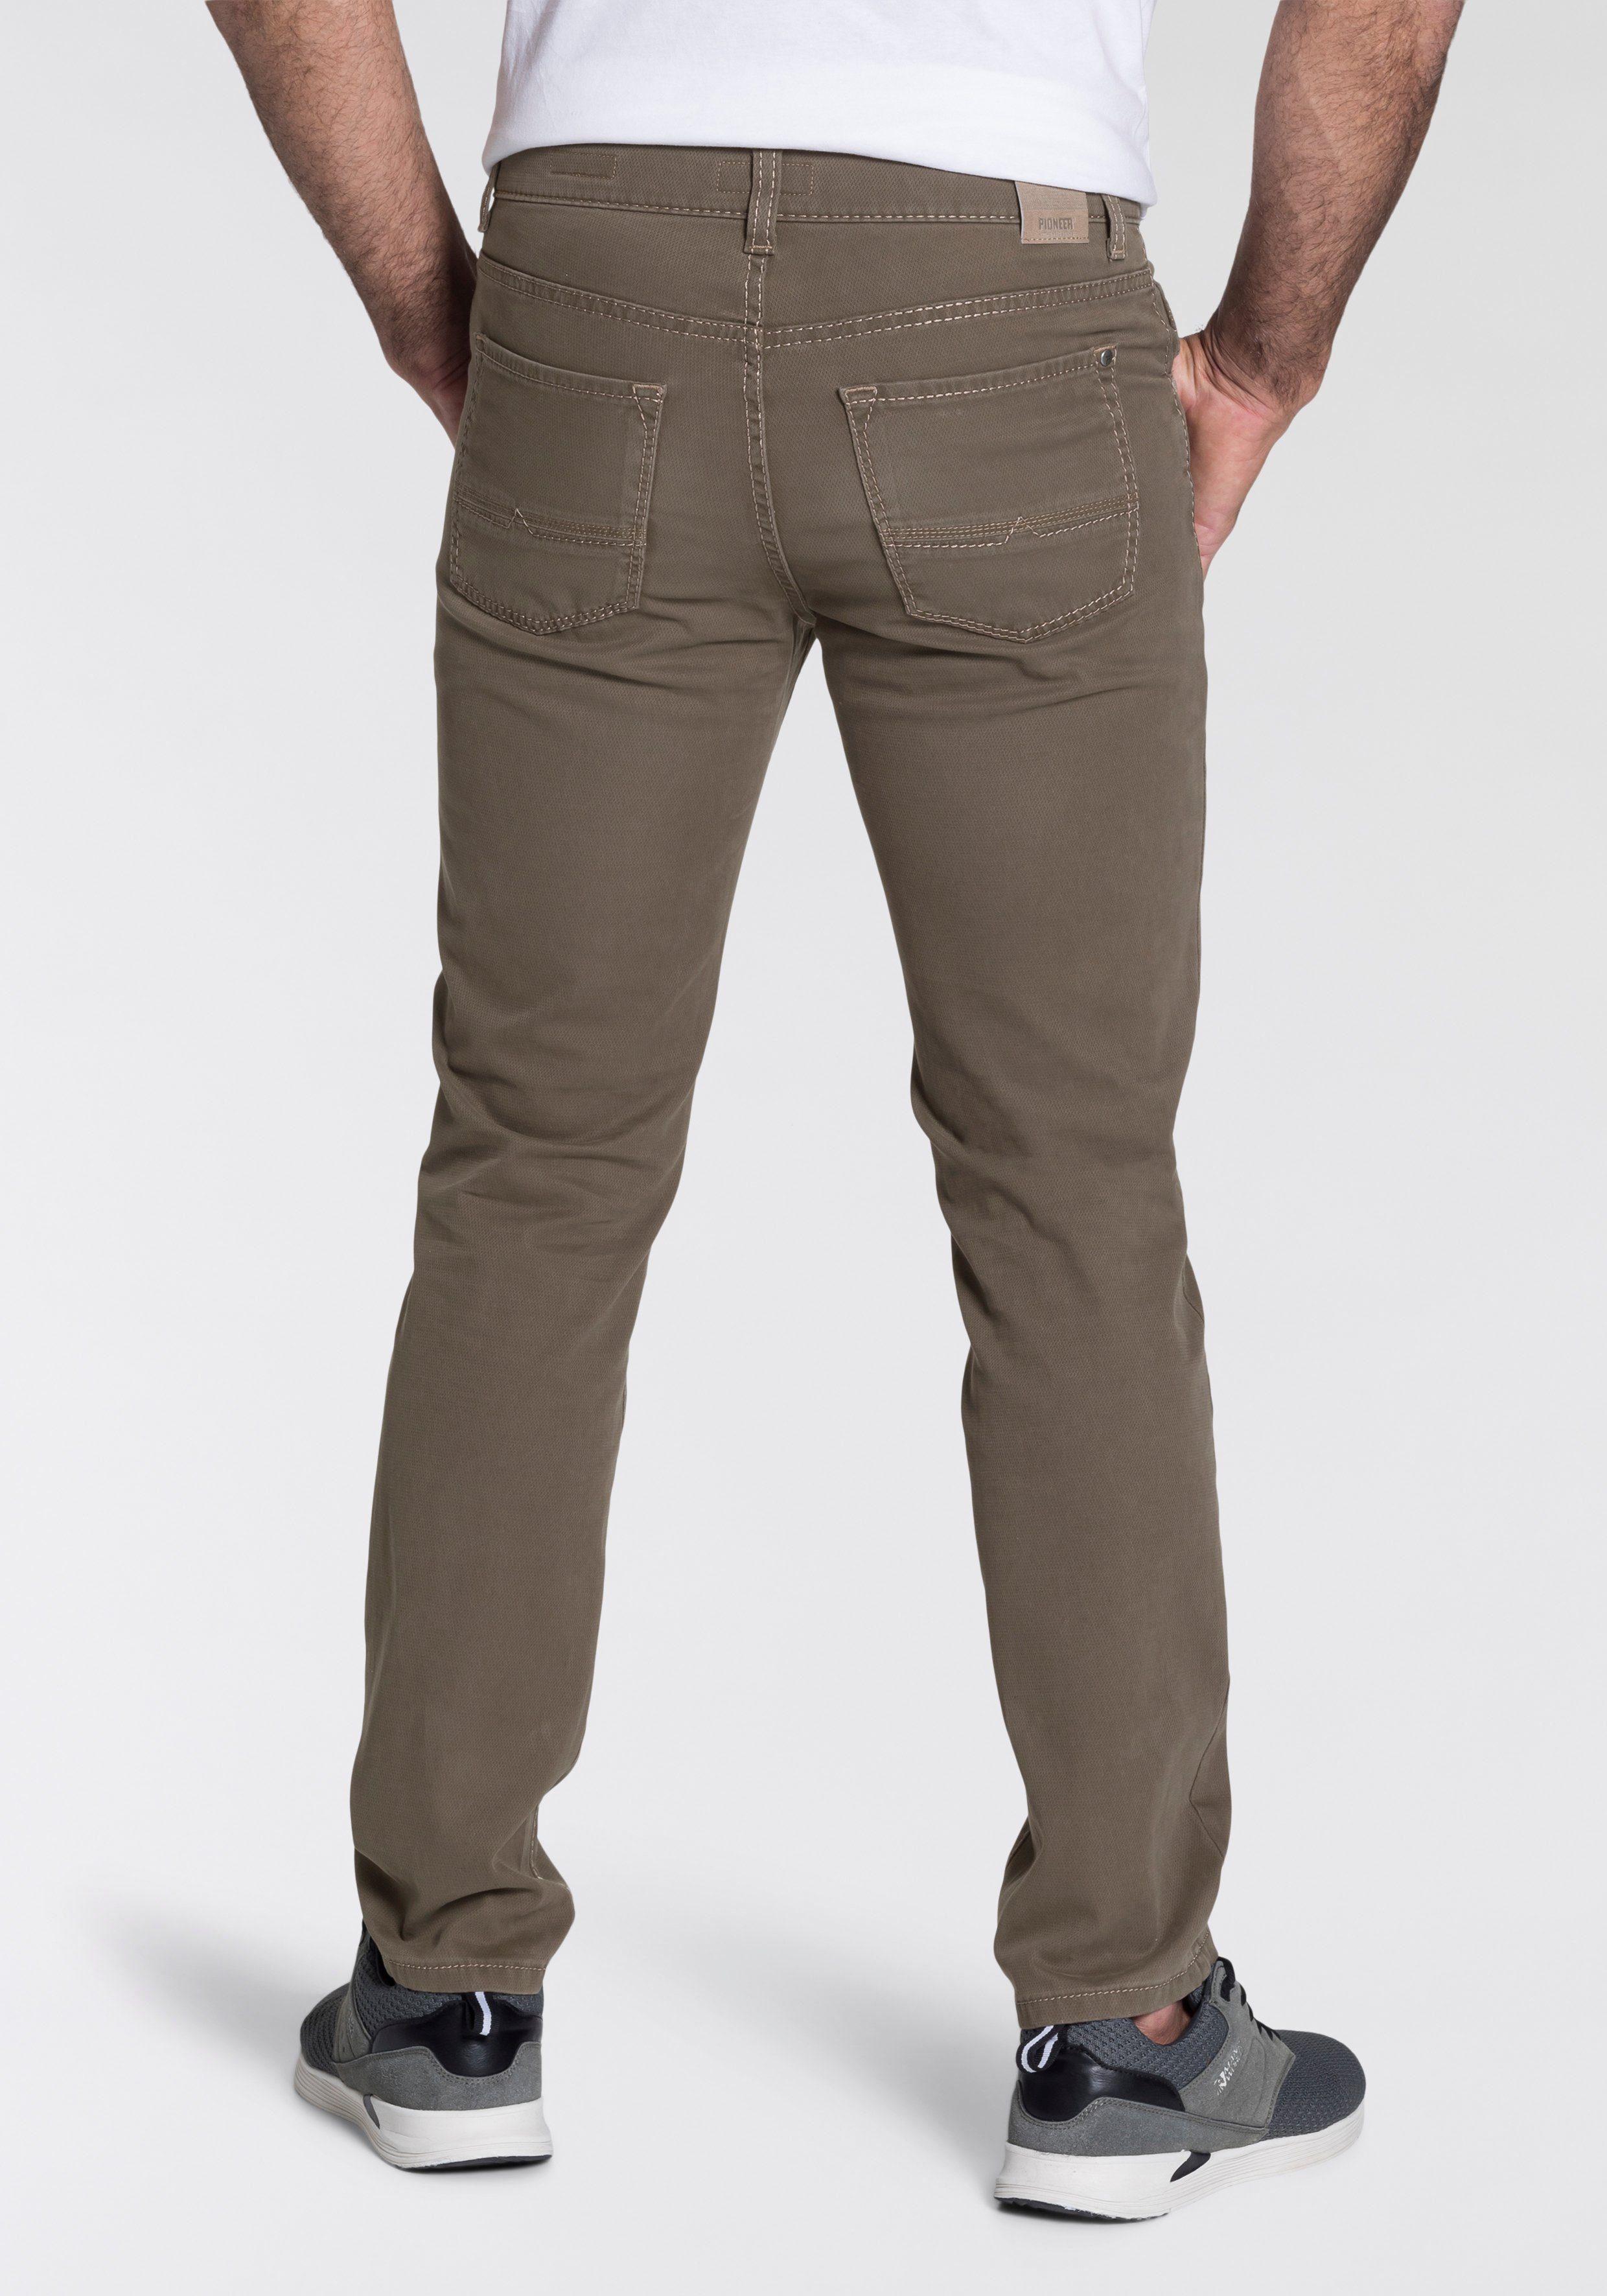 Rando, Pflegeleichte 5-Pocket-Hose Jeans Baumwollmischung Pioneer Authentic